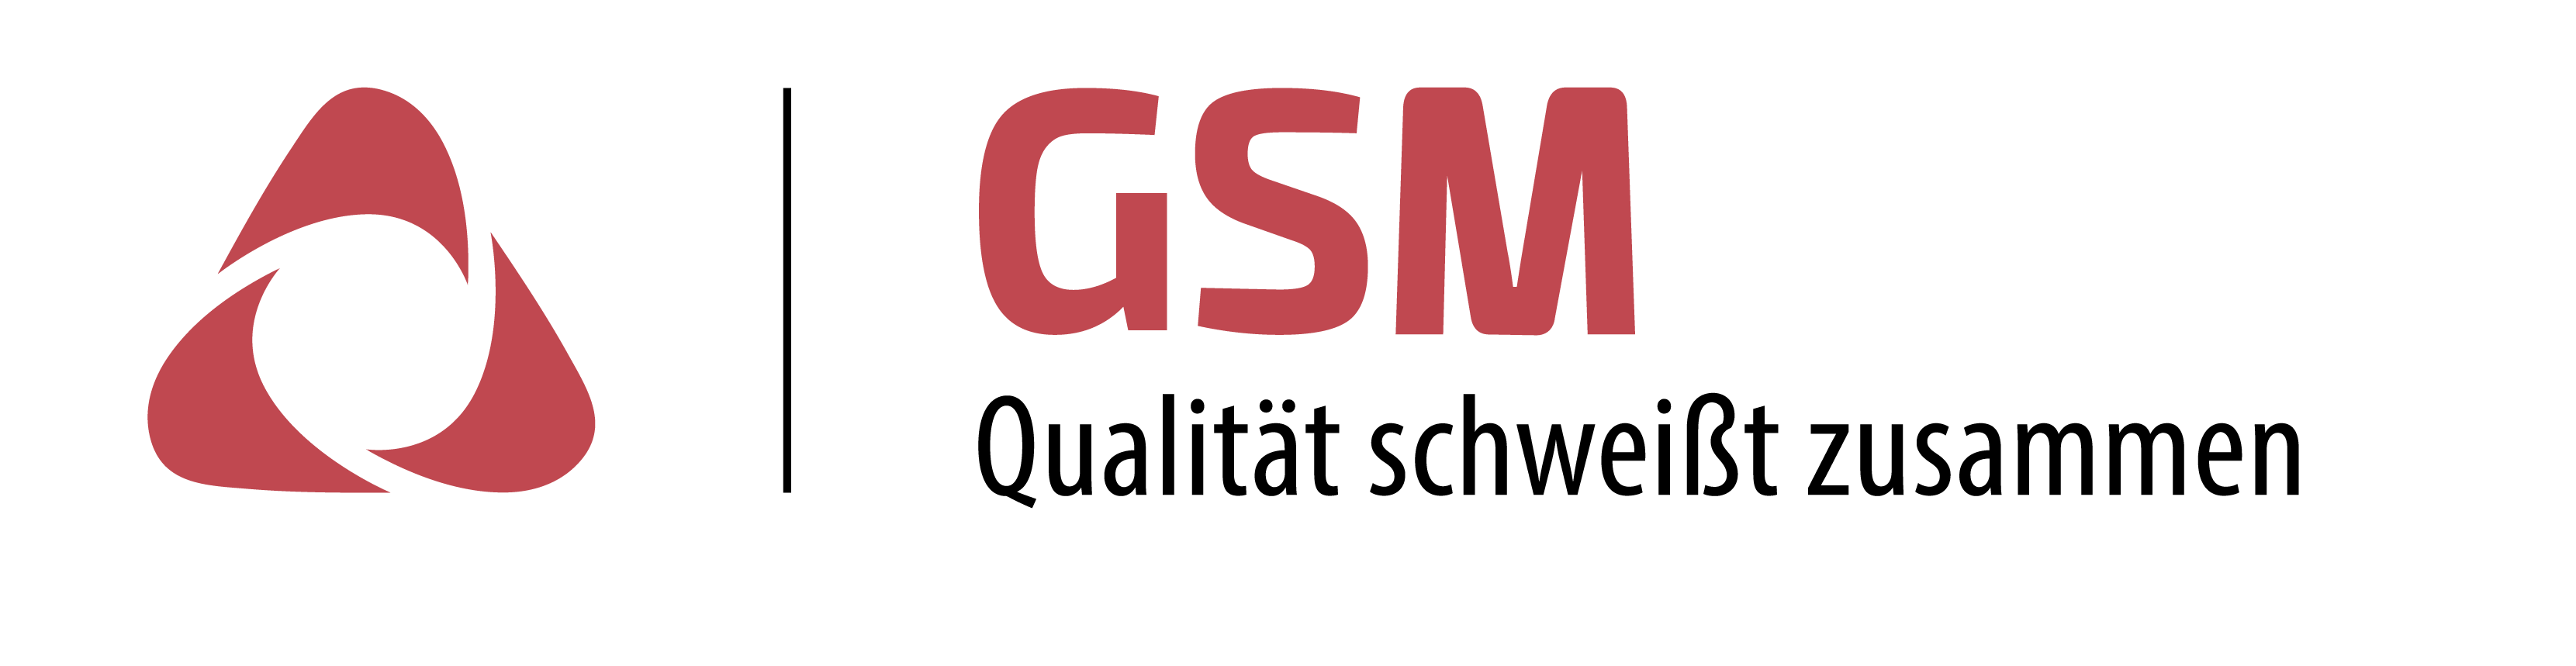 GSM_Logo_transparent